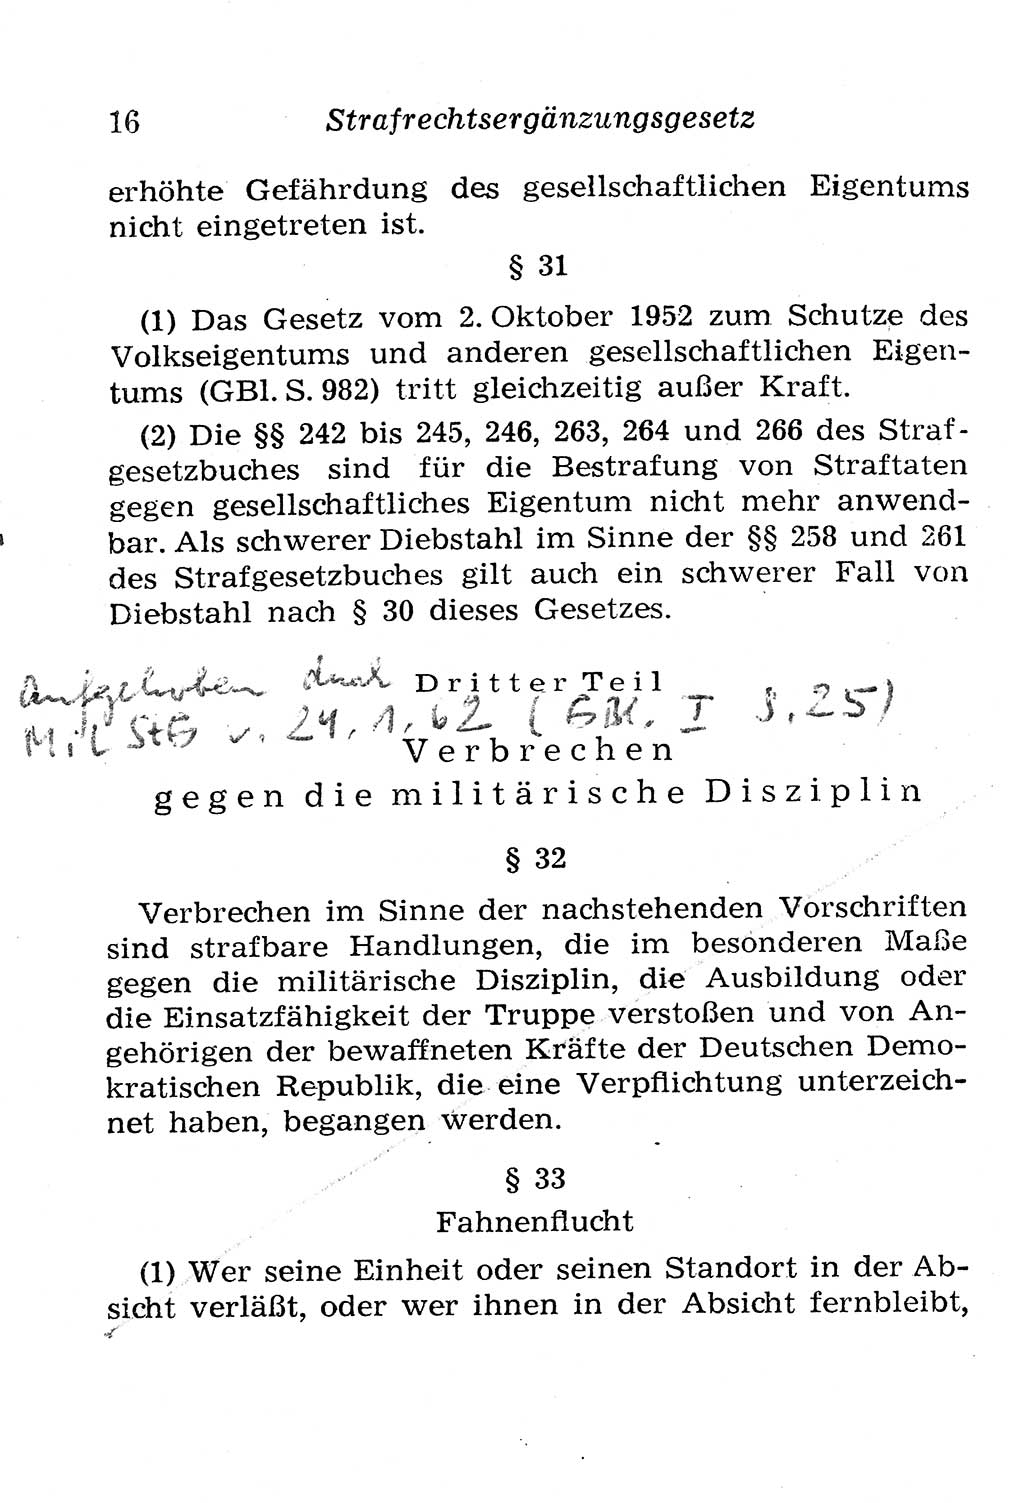 Strafgesetzbuch (StGB) und andere Strafgesetze [Deutsche Demokratische Republik (DDR)] 1958, Seite 16 (StGB Strafges. DDR 1958, S. 16)